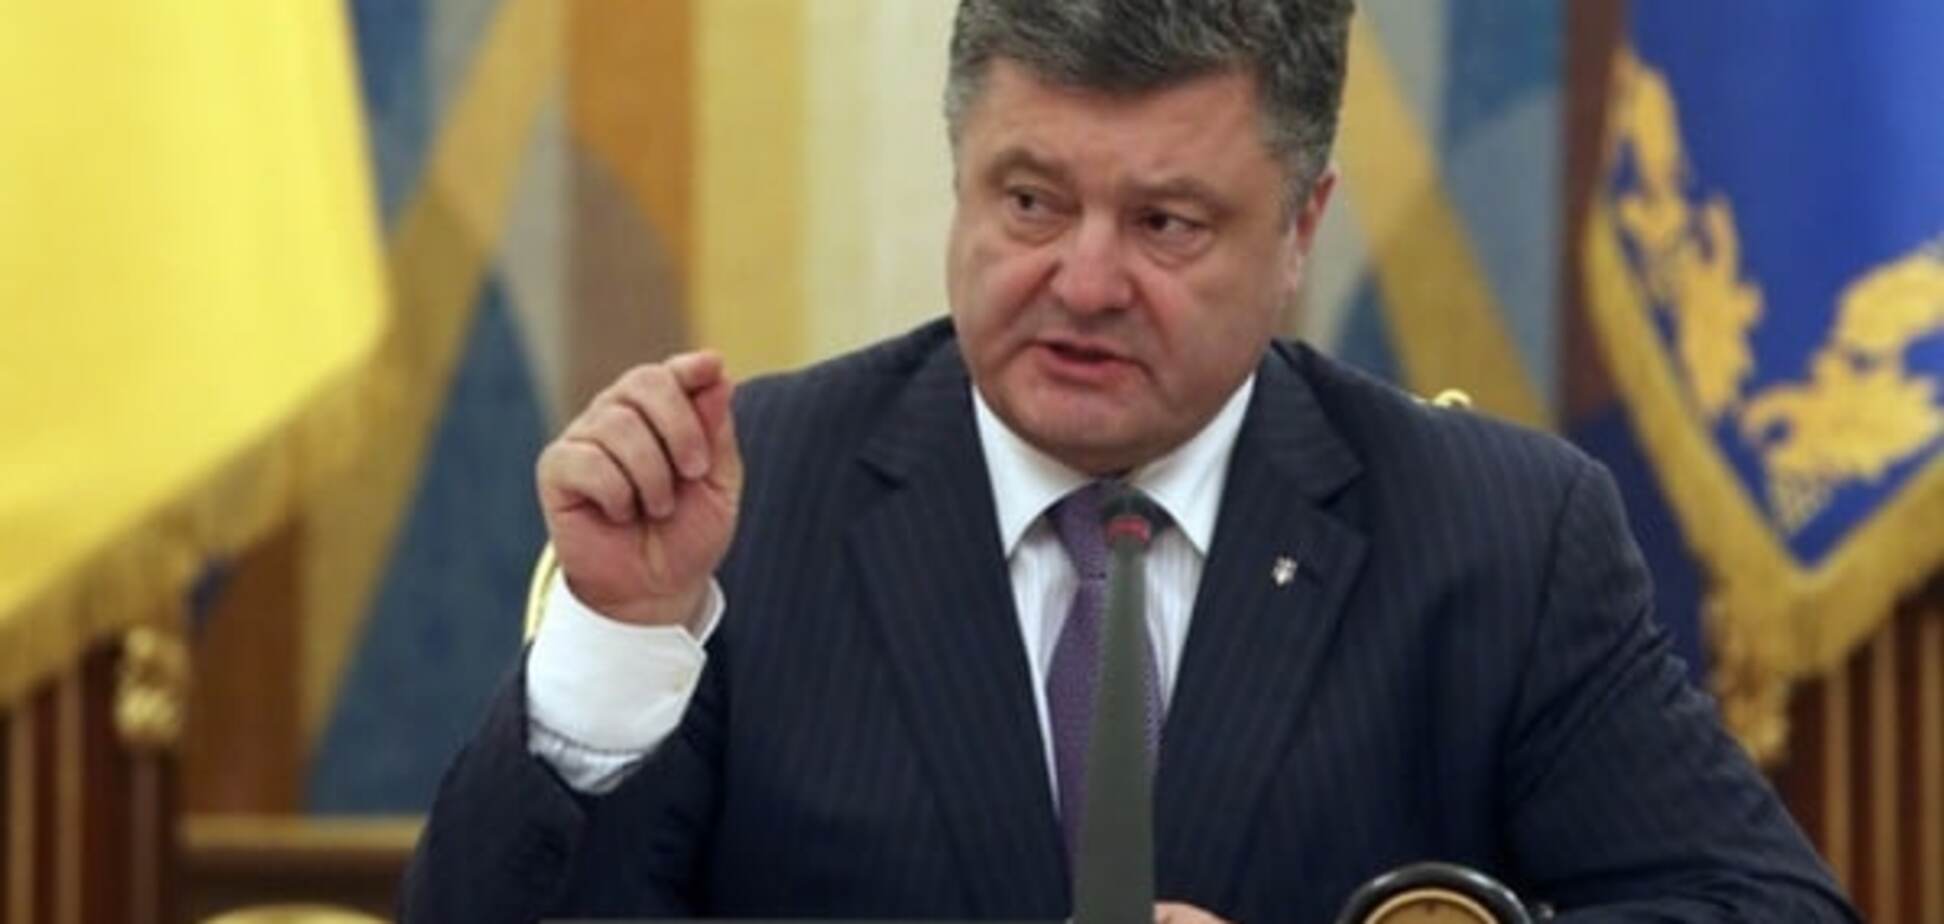 Цеголко анонсировал большую пресс-конференцию Порошенко